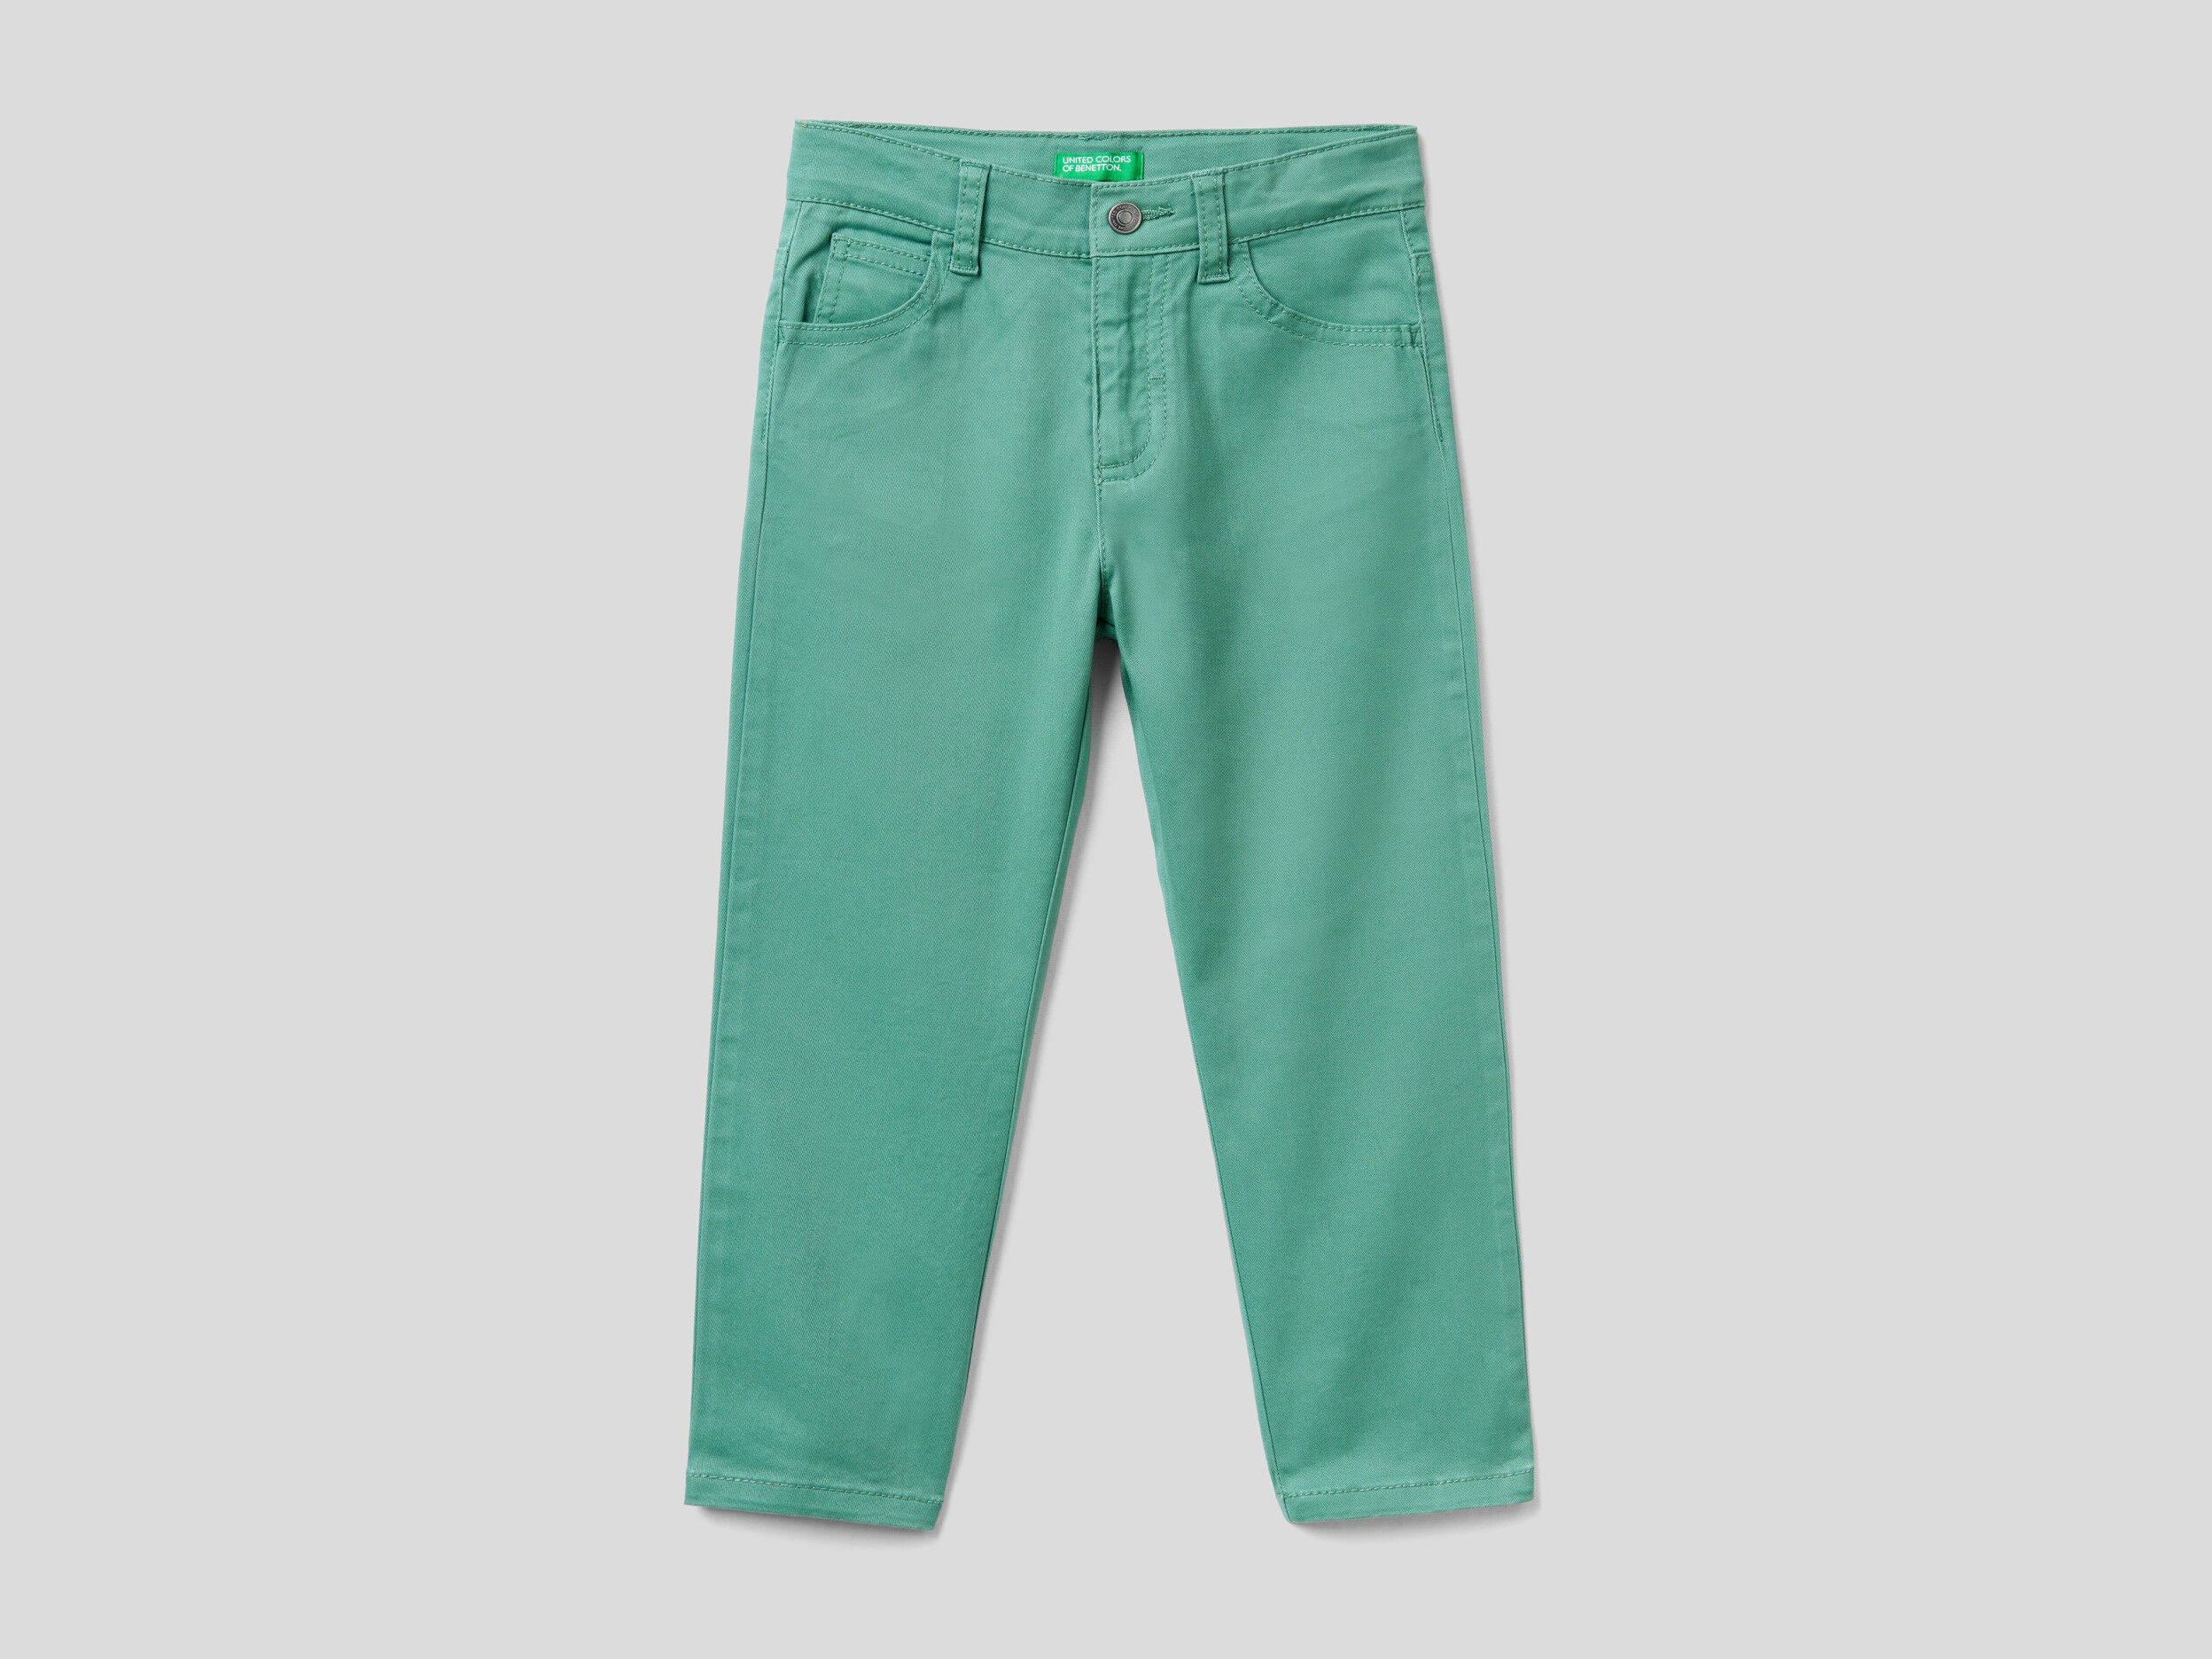 Pantaloni Stretch Cinque Tasche United Colors of Benetton Abbigliamento Pantaloni e jeans Pantaloni Pantaloni stretch 